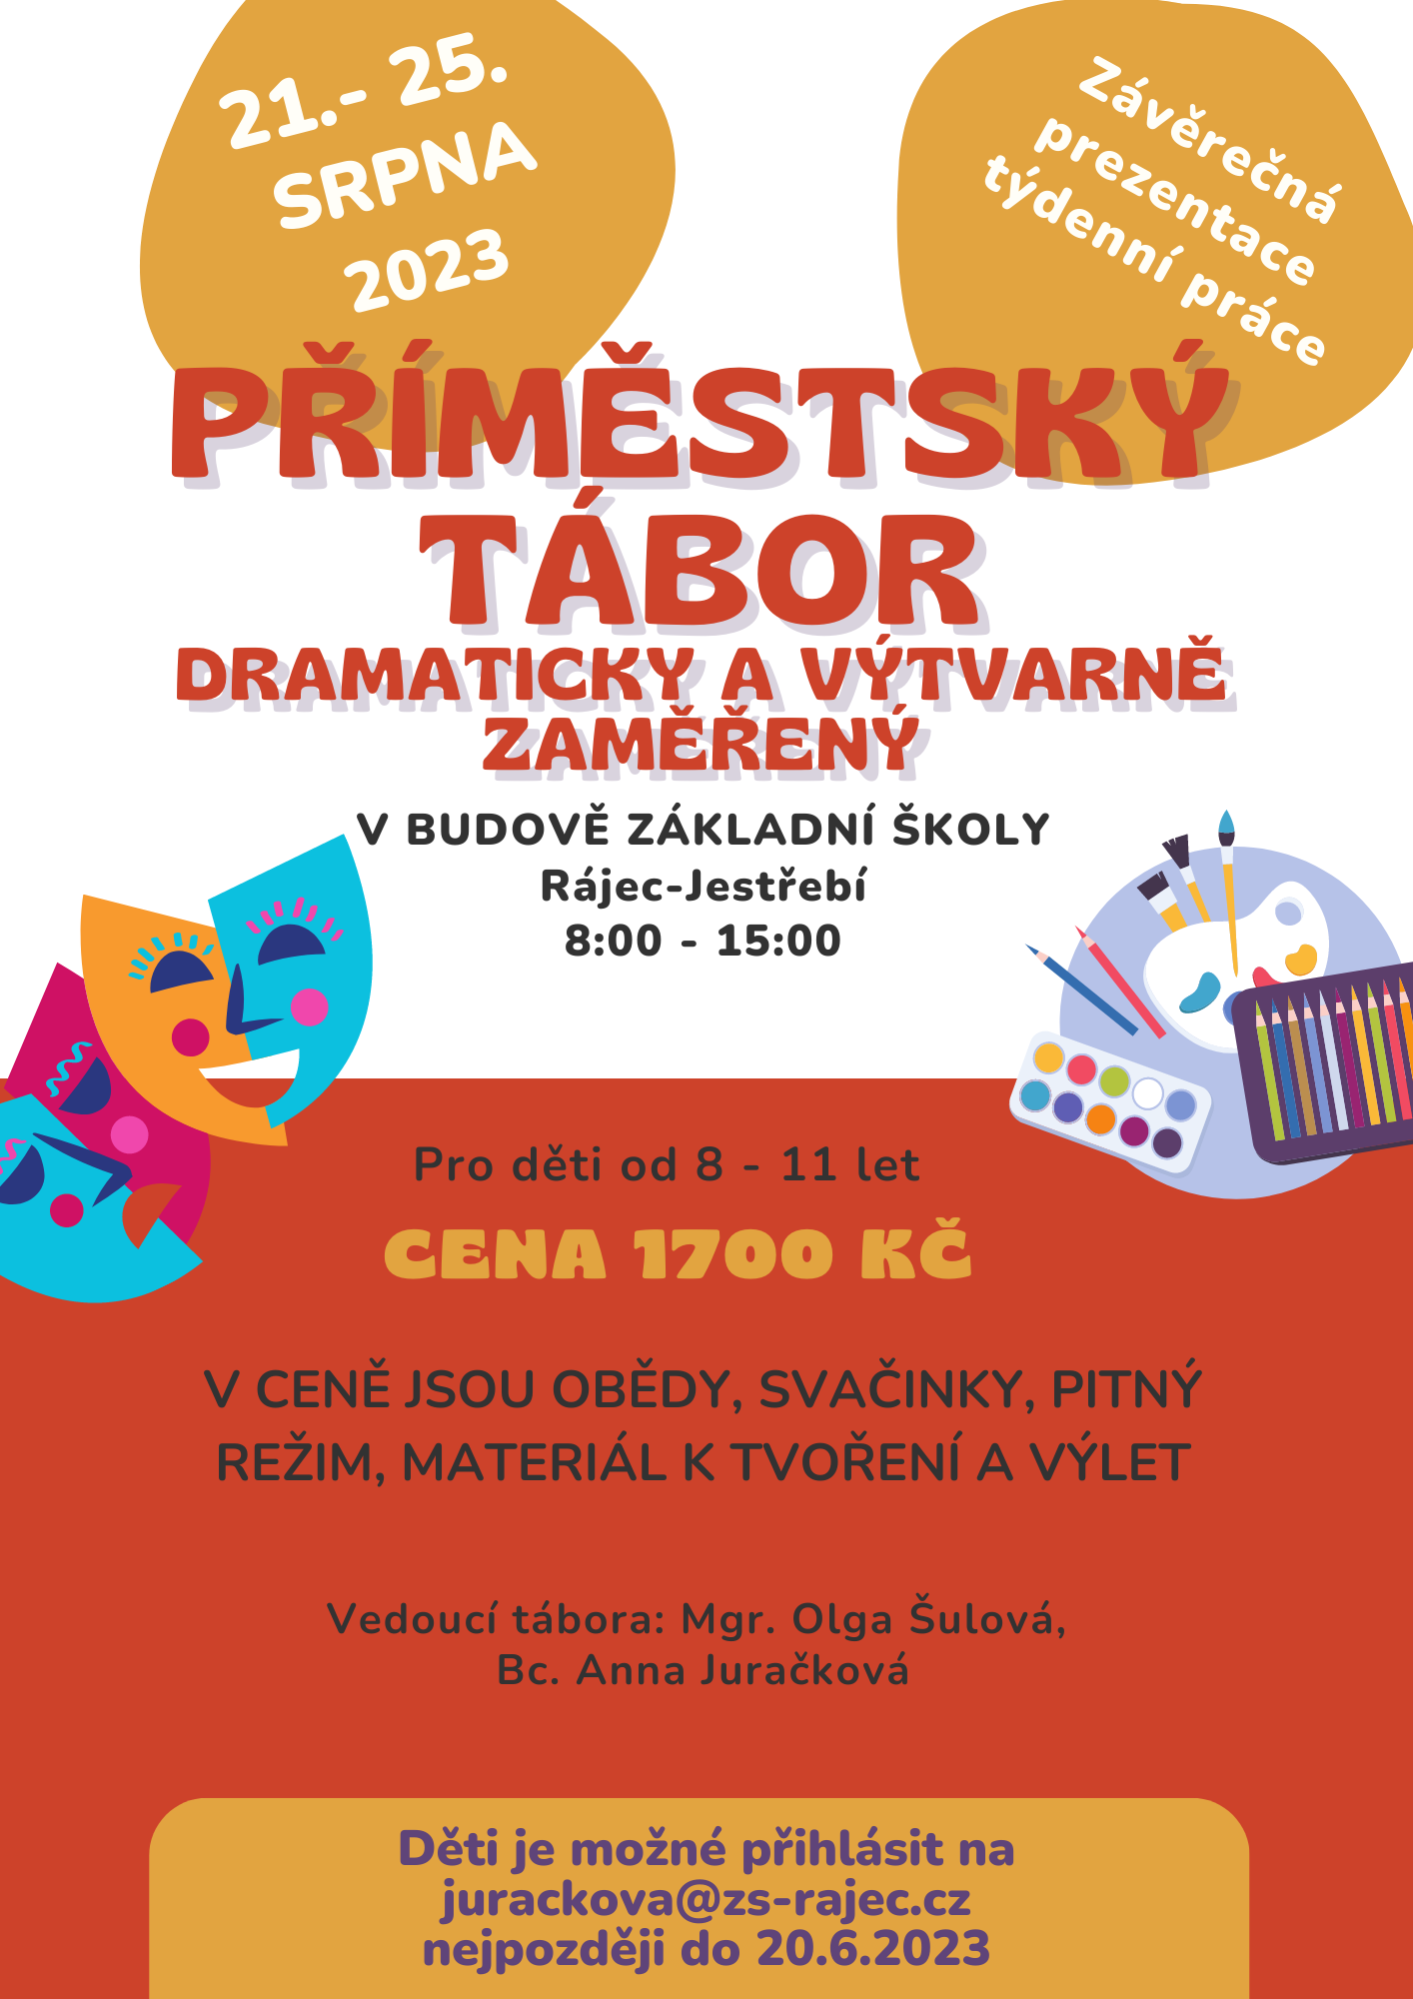 Primestsky-tabor